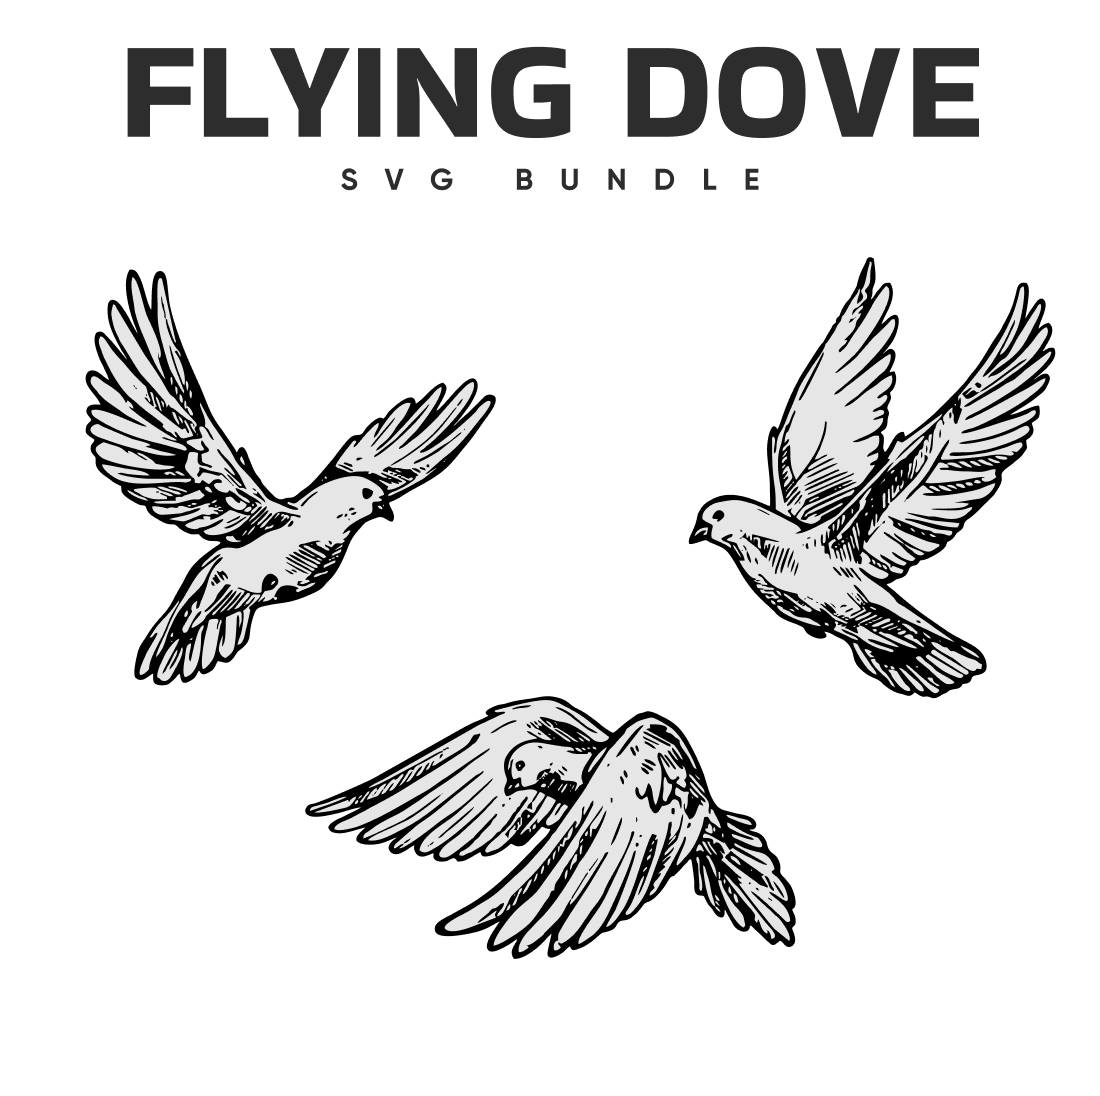 Flying doves svg bundle.